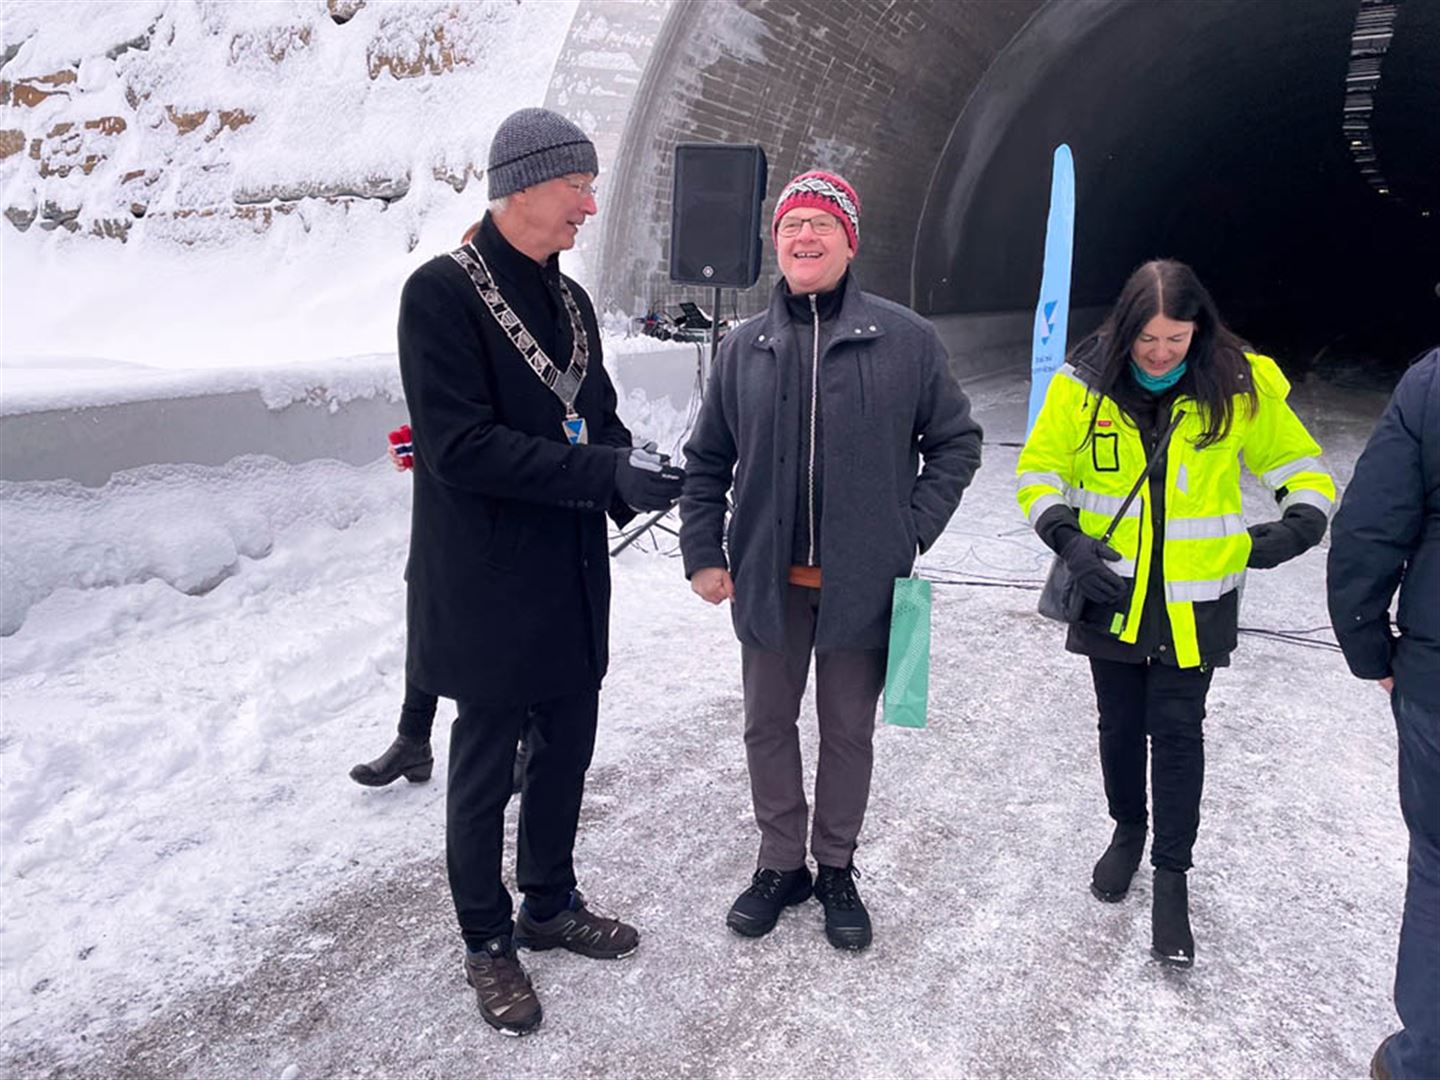 Fylkesordførar Askeland med ordførarkjede i samtale framfor tunnelopninga. foto.